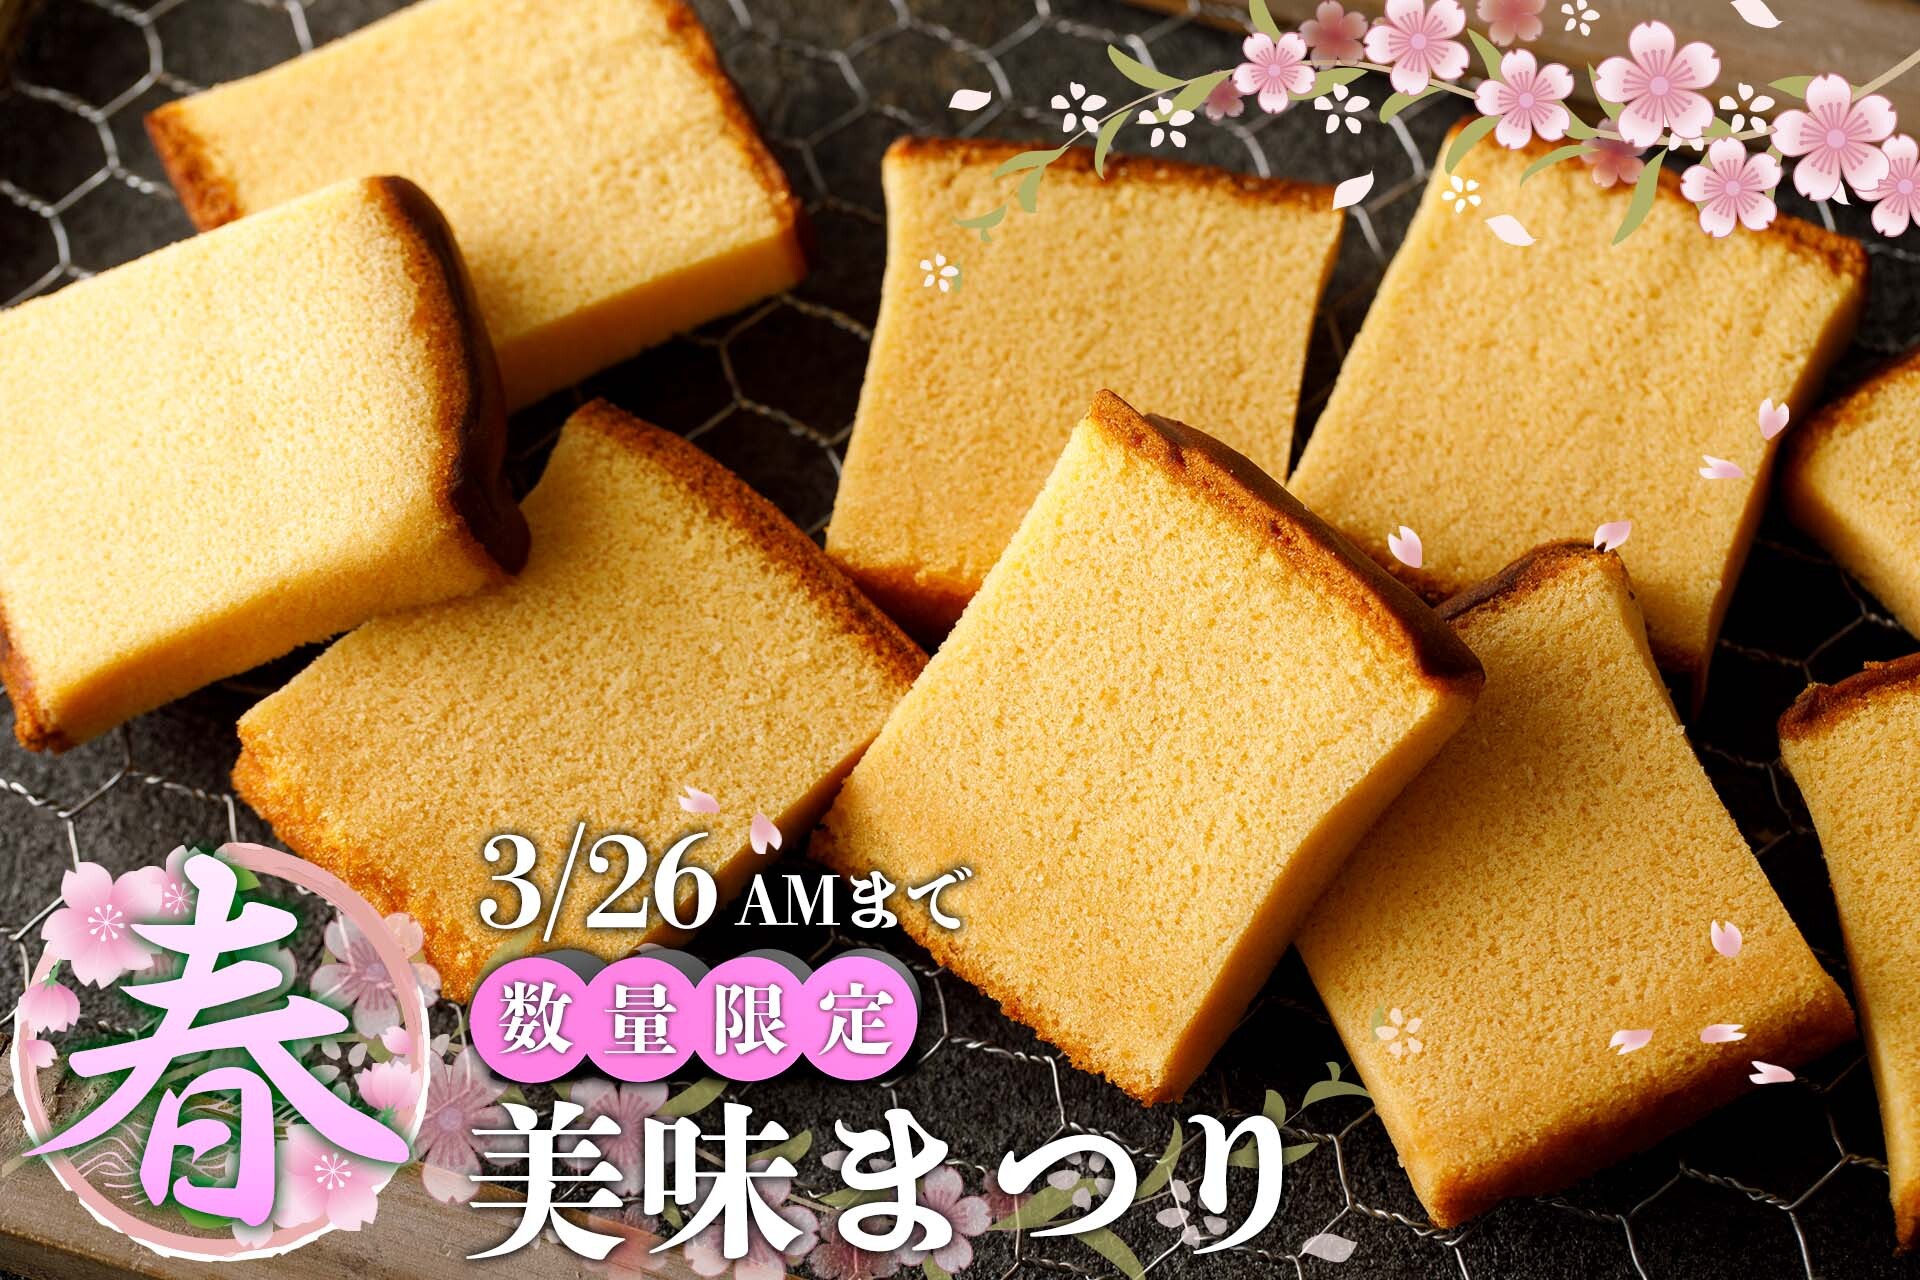 石川県金沢市からお贈りするかすていらの超希少部位
「美味(みみ)」のキャンペーンを通販サイトで開催！